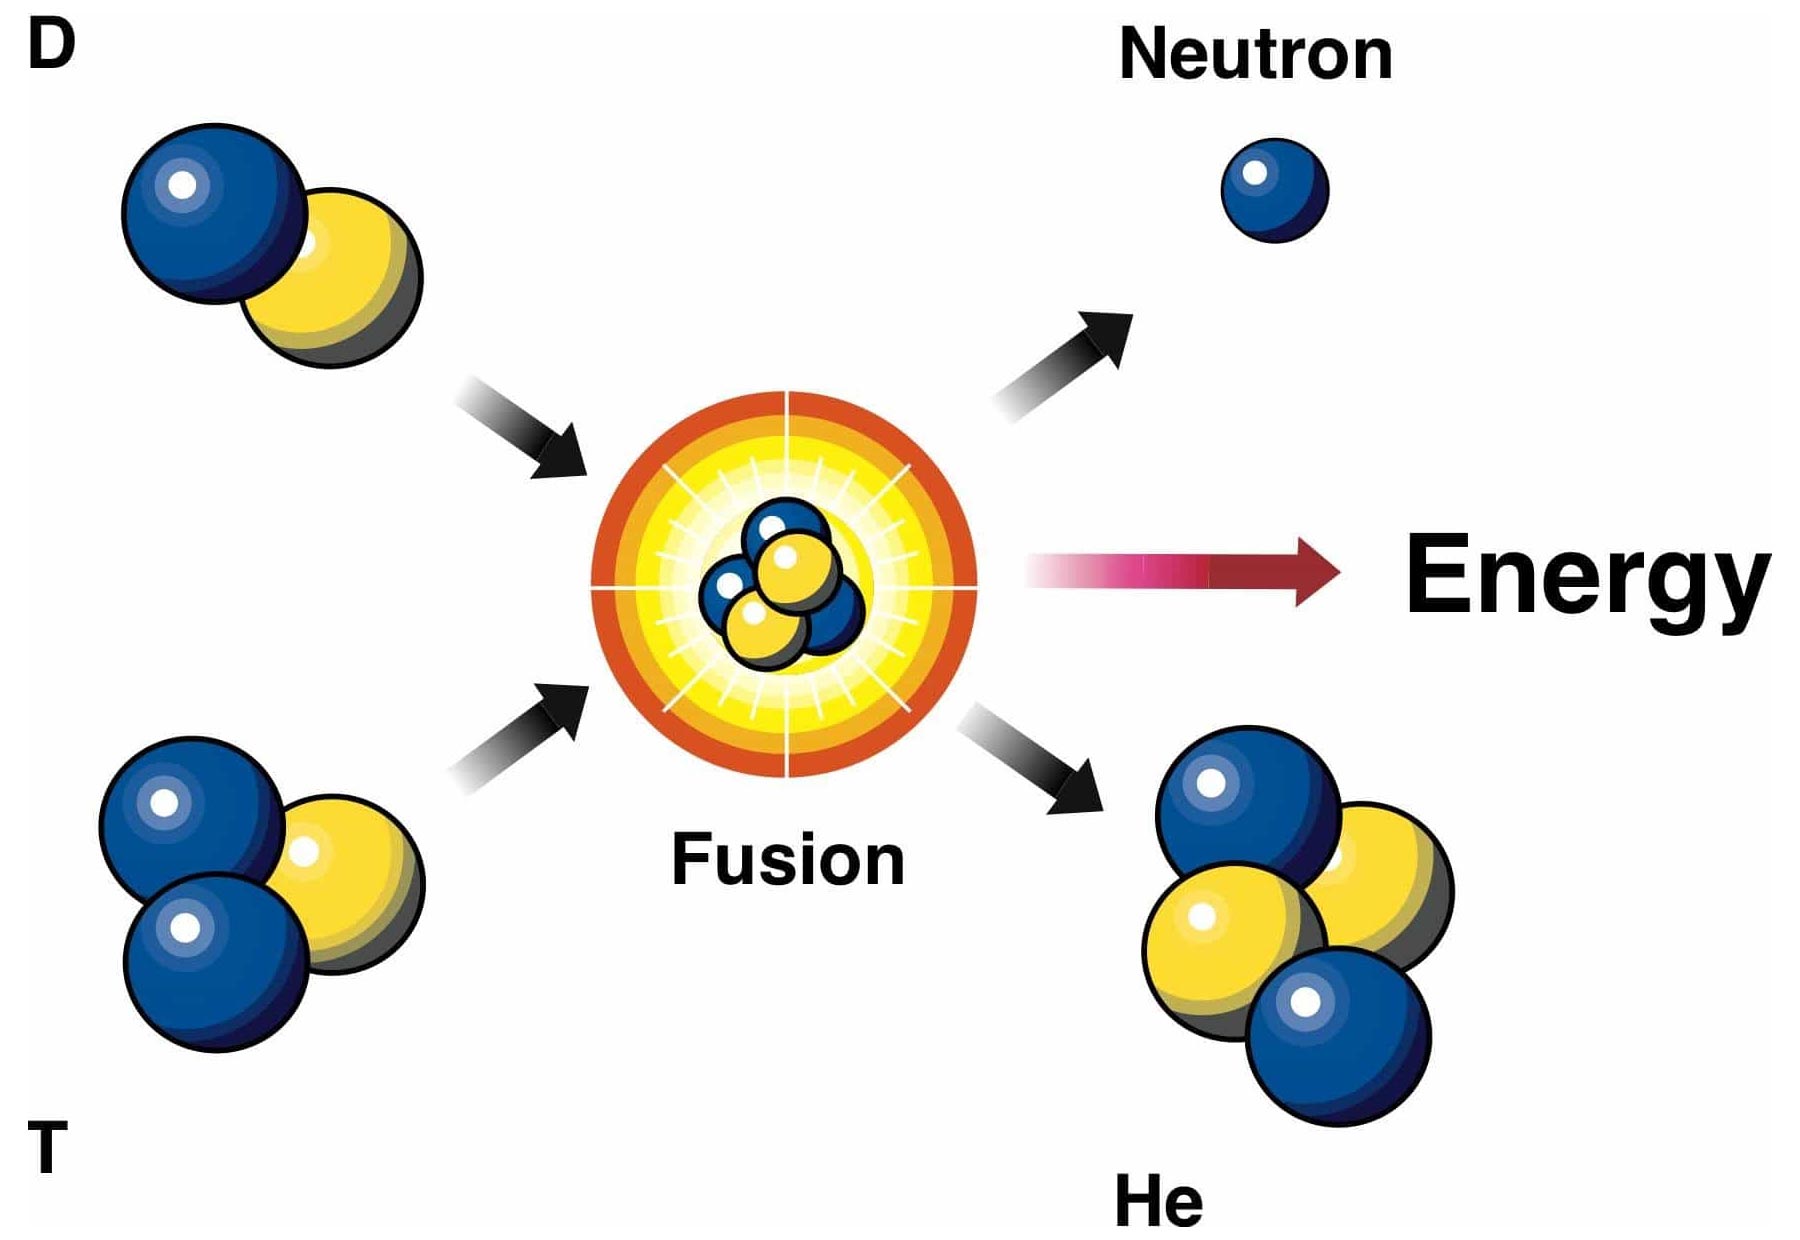 Синтез ядер гелия из ядер водорода. Реакция ядерного синтеза схема. Схема термоядерного синтеза для дейтерия и трития. Схема реакции термоядерного синтеза. Термоядерная реакция дейтерия и трития.